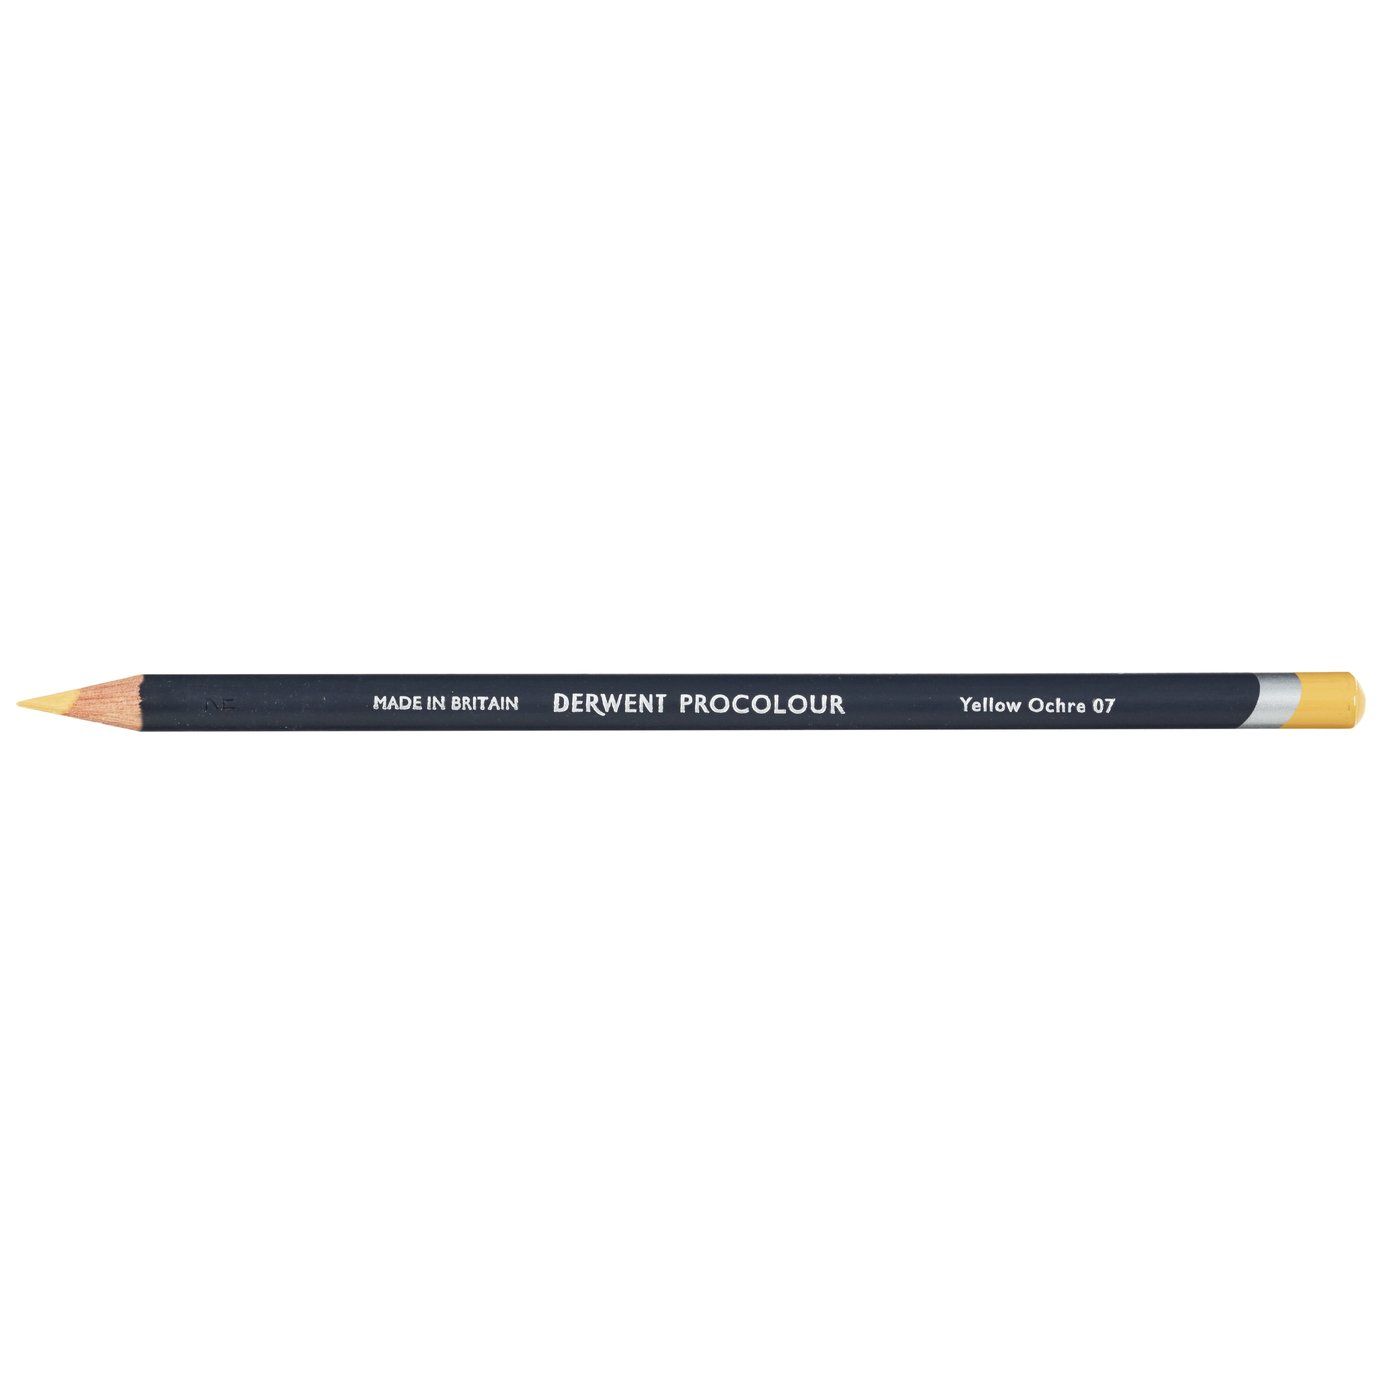 Derwent Procolour Pencil - 07 Yellow Ochre